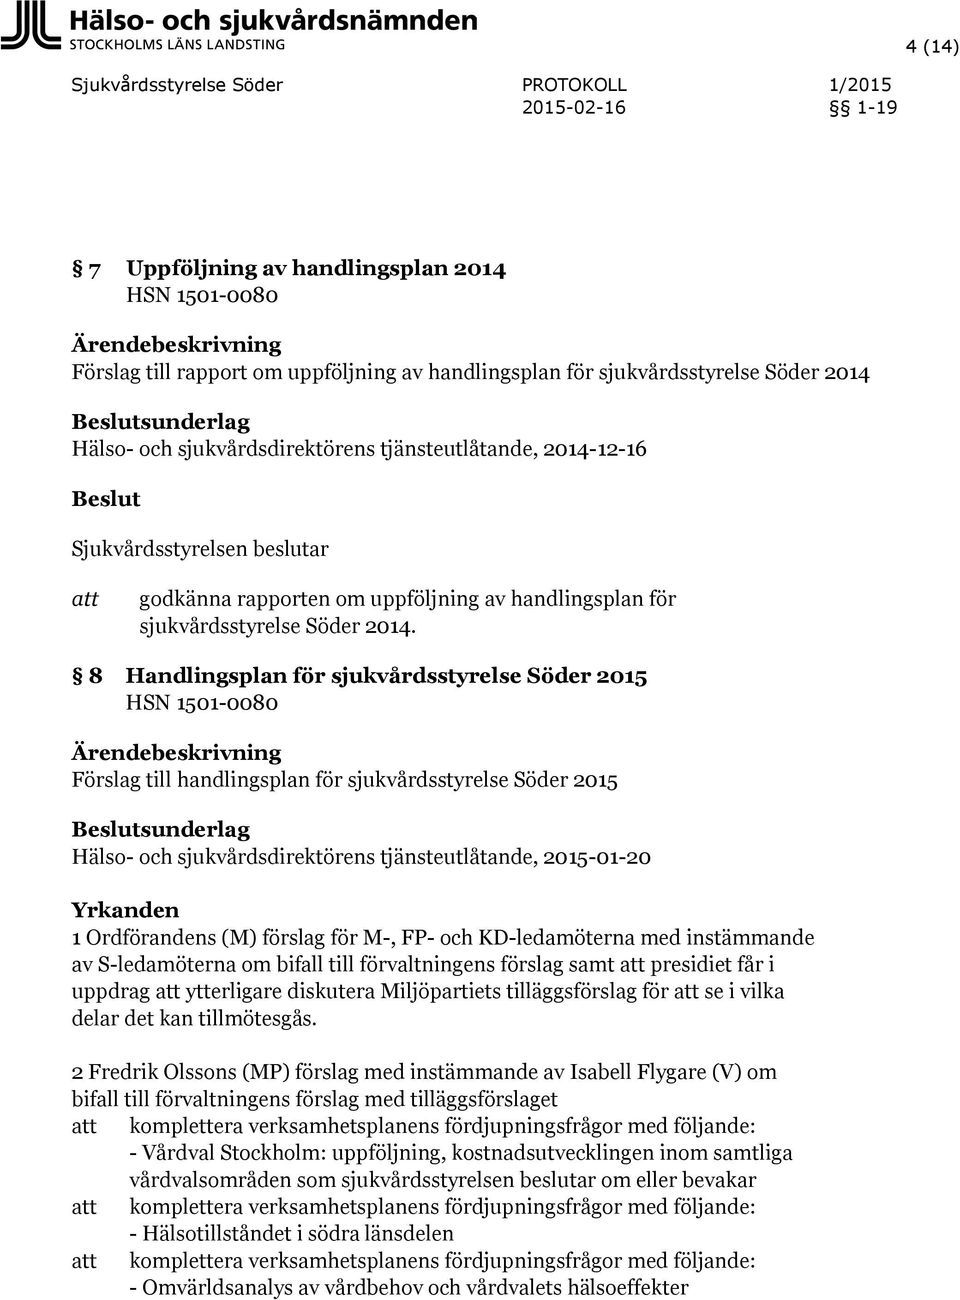 8 Handlingsplan för sjukvårdsstyrelse Söder 2015 HSN 1501-0080 Förslag till handlingsplan för sjukvårdsstyrelse Söder 2015 Hälso- och sjukvårdsdirektörens tjänsteutlåtande, 2015-01-20 Yrkanden 1